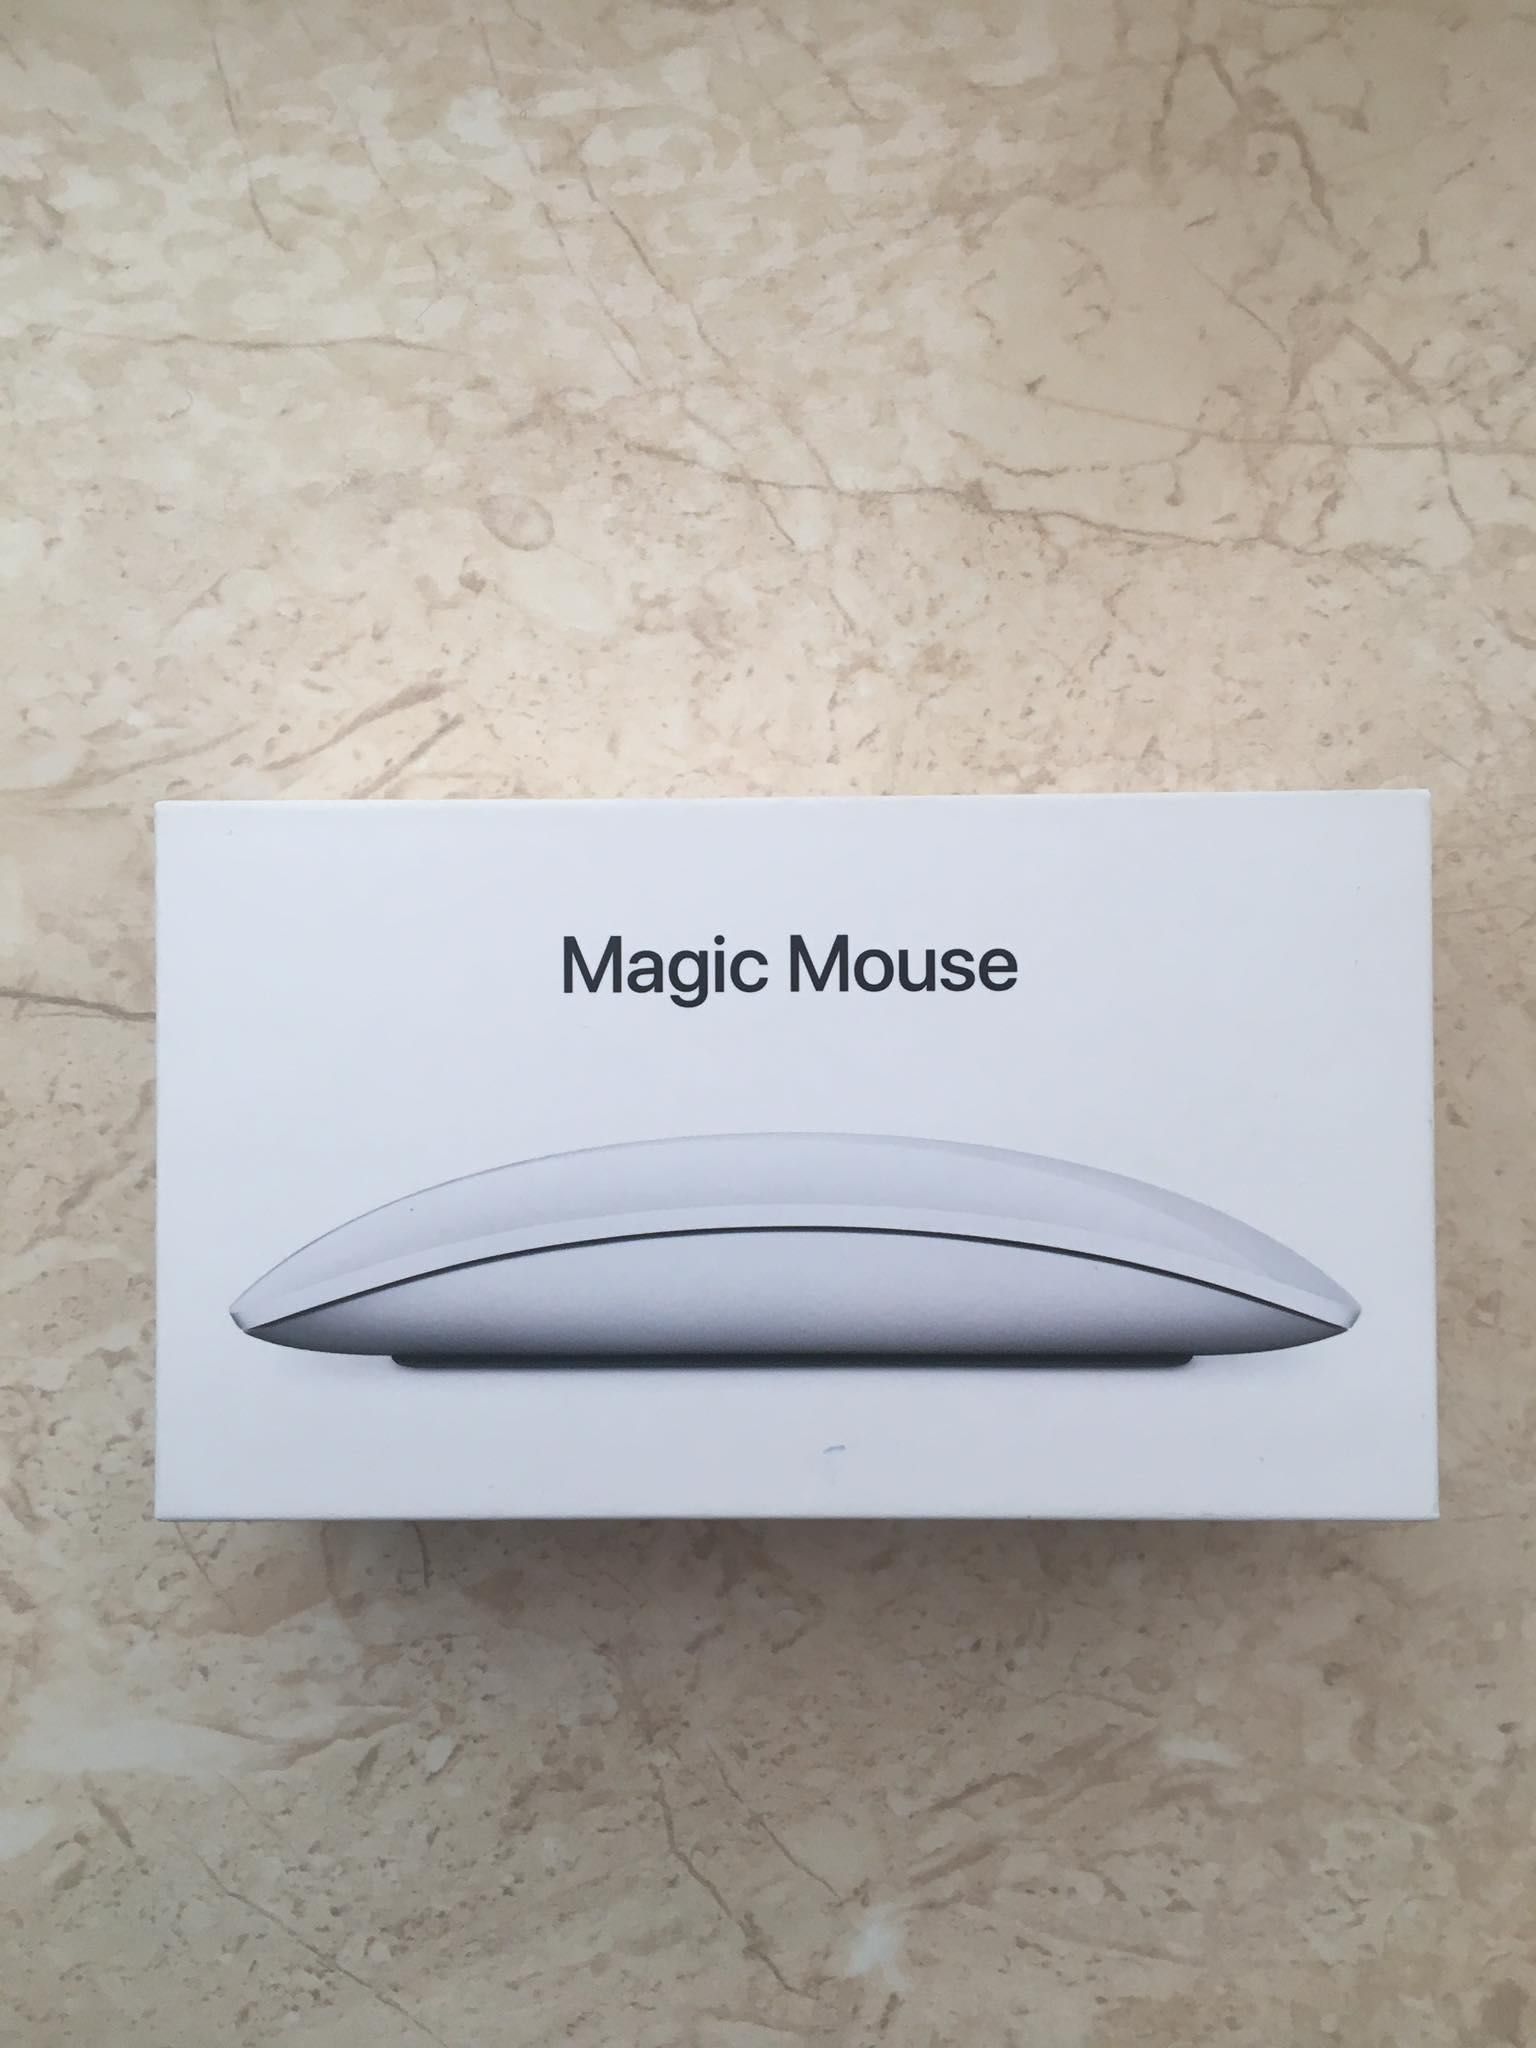 Беспроводная мышка Apple